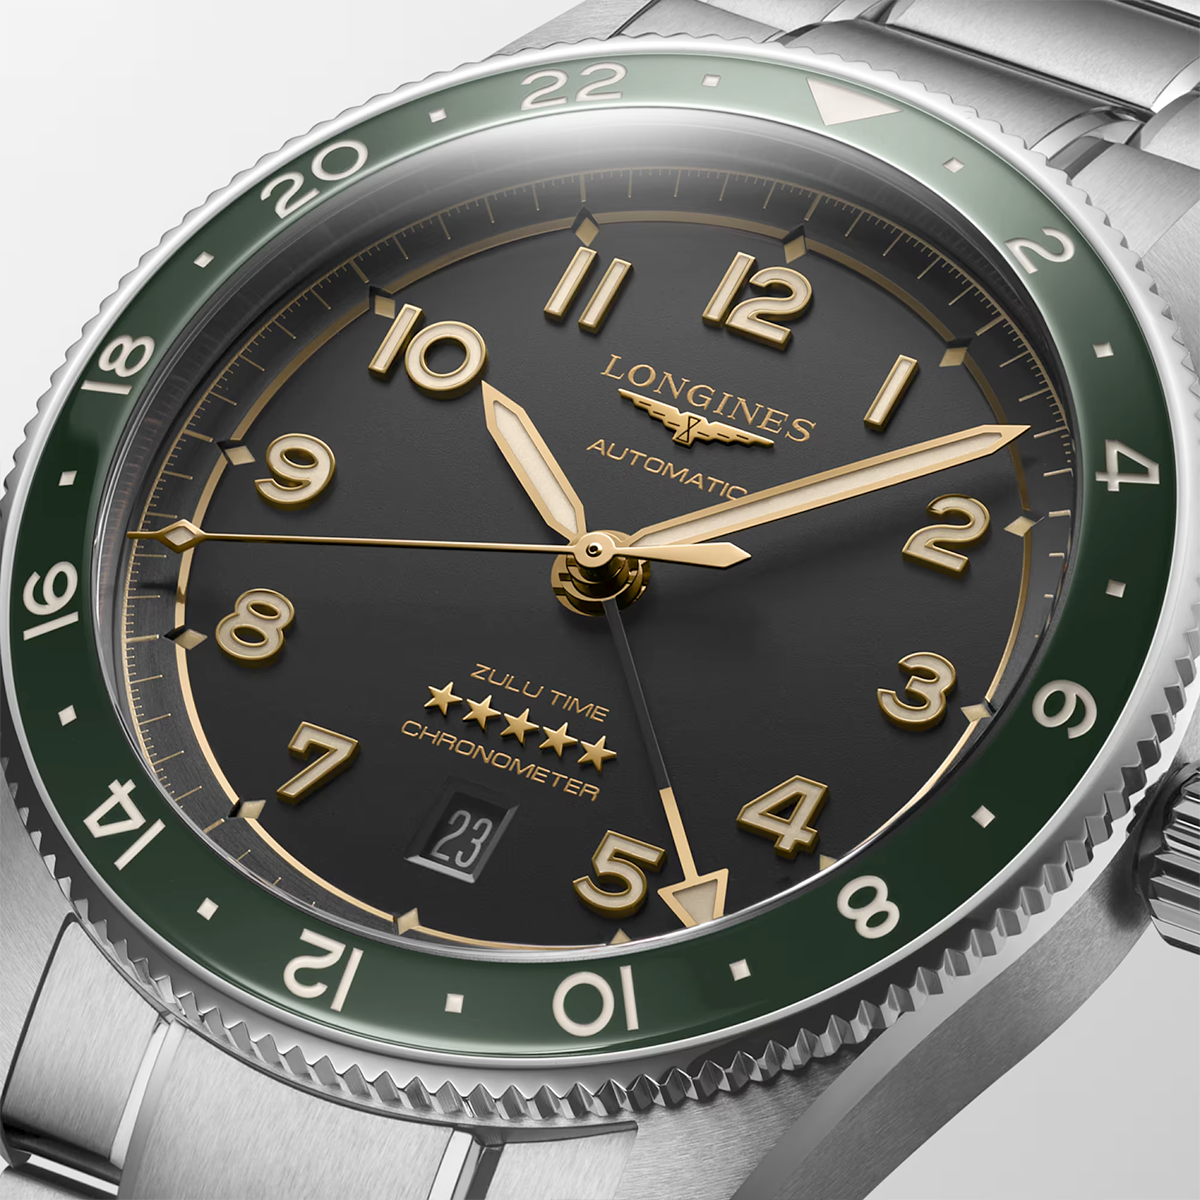 Spirit Zulu Time 42mm Anthracite Dial & Green Bezel Bracelet Watch